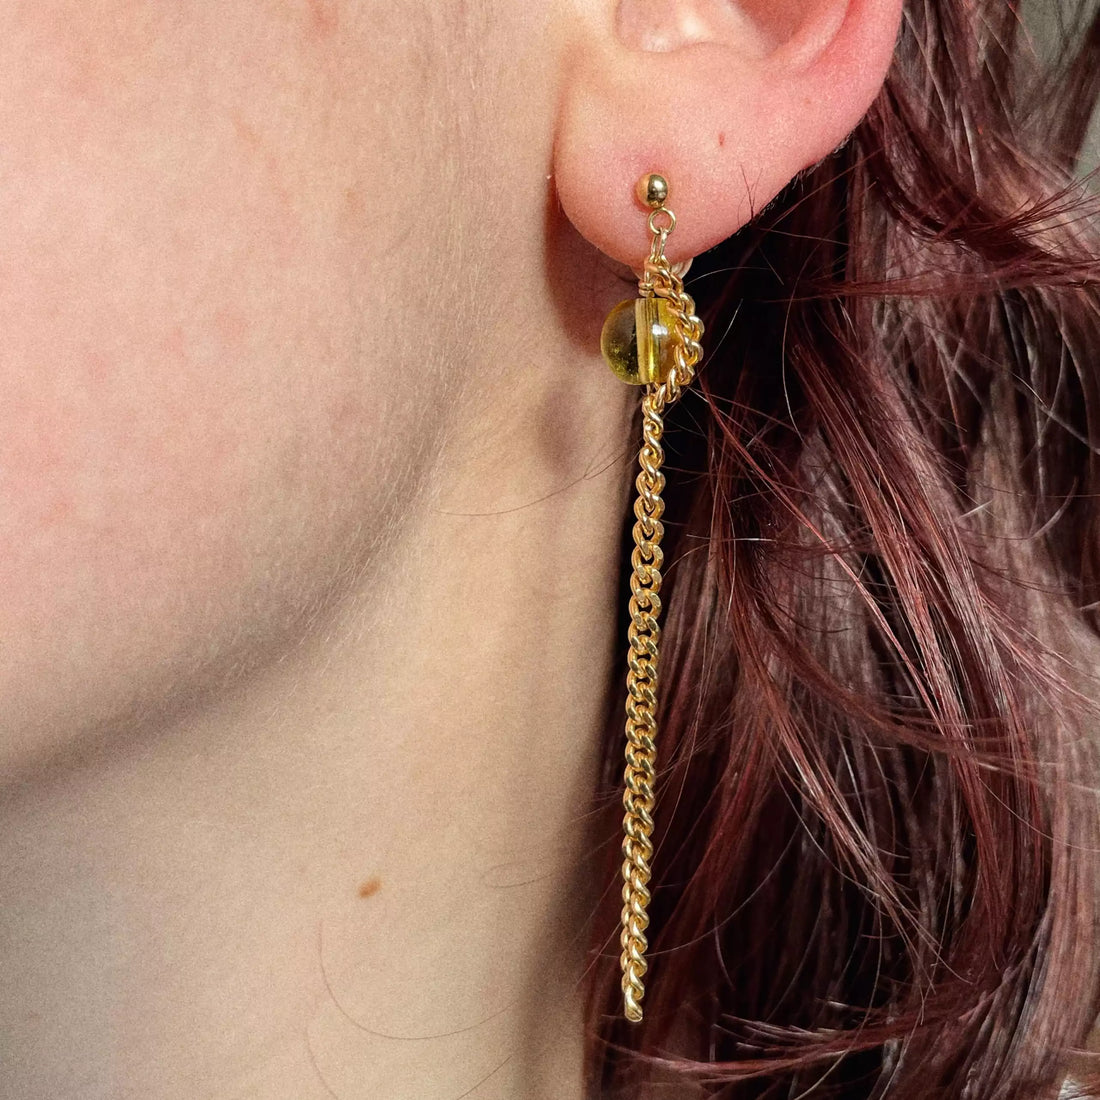 Le modèle porte la deuxième boucle d'oreille, c'est une perle jaune avec la chaîne plaquée or qui l'entoure et qui retombe pour être de la même longueur que la première boucle.